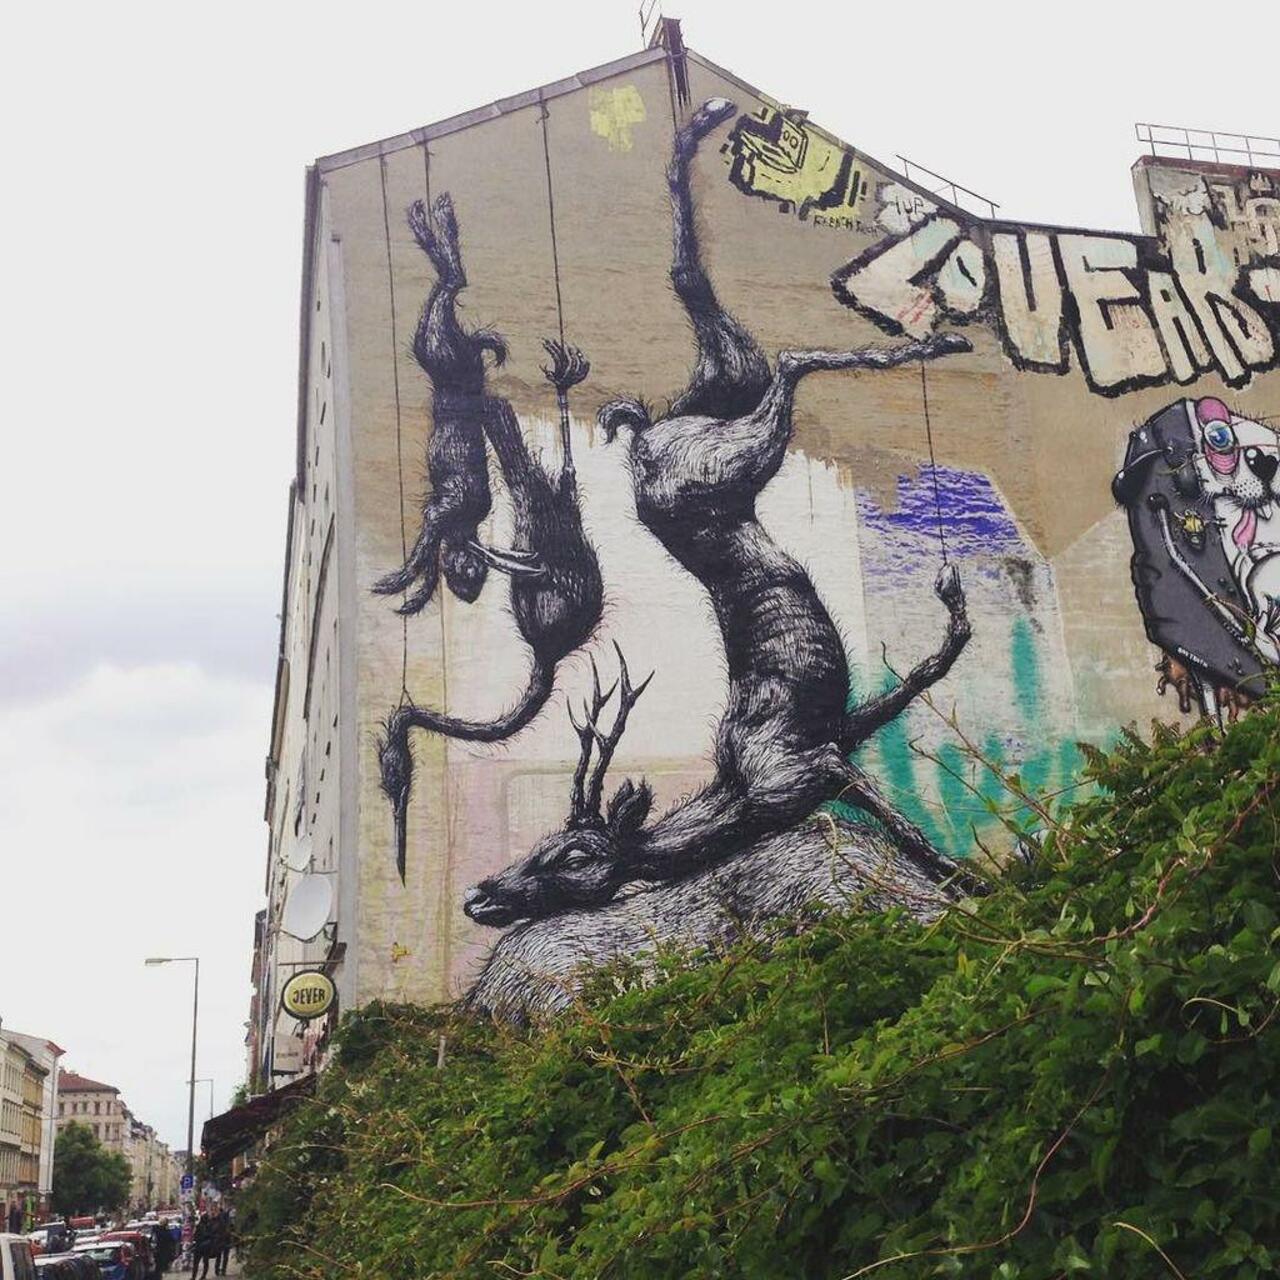 ROA #roa #graffiti #mural #kreuzberg #streetart #wheninberlin #art #berlin #germany #tbt by yas2512 https://t.co/AdxUxiwLxY